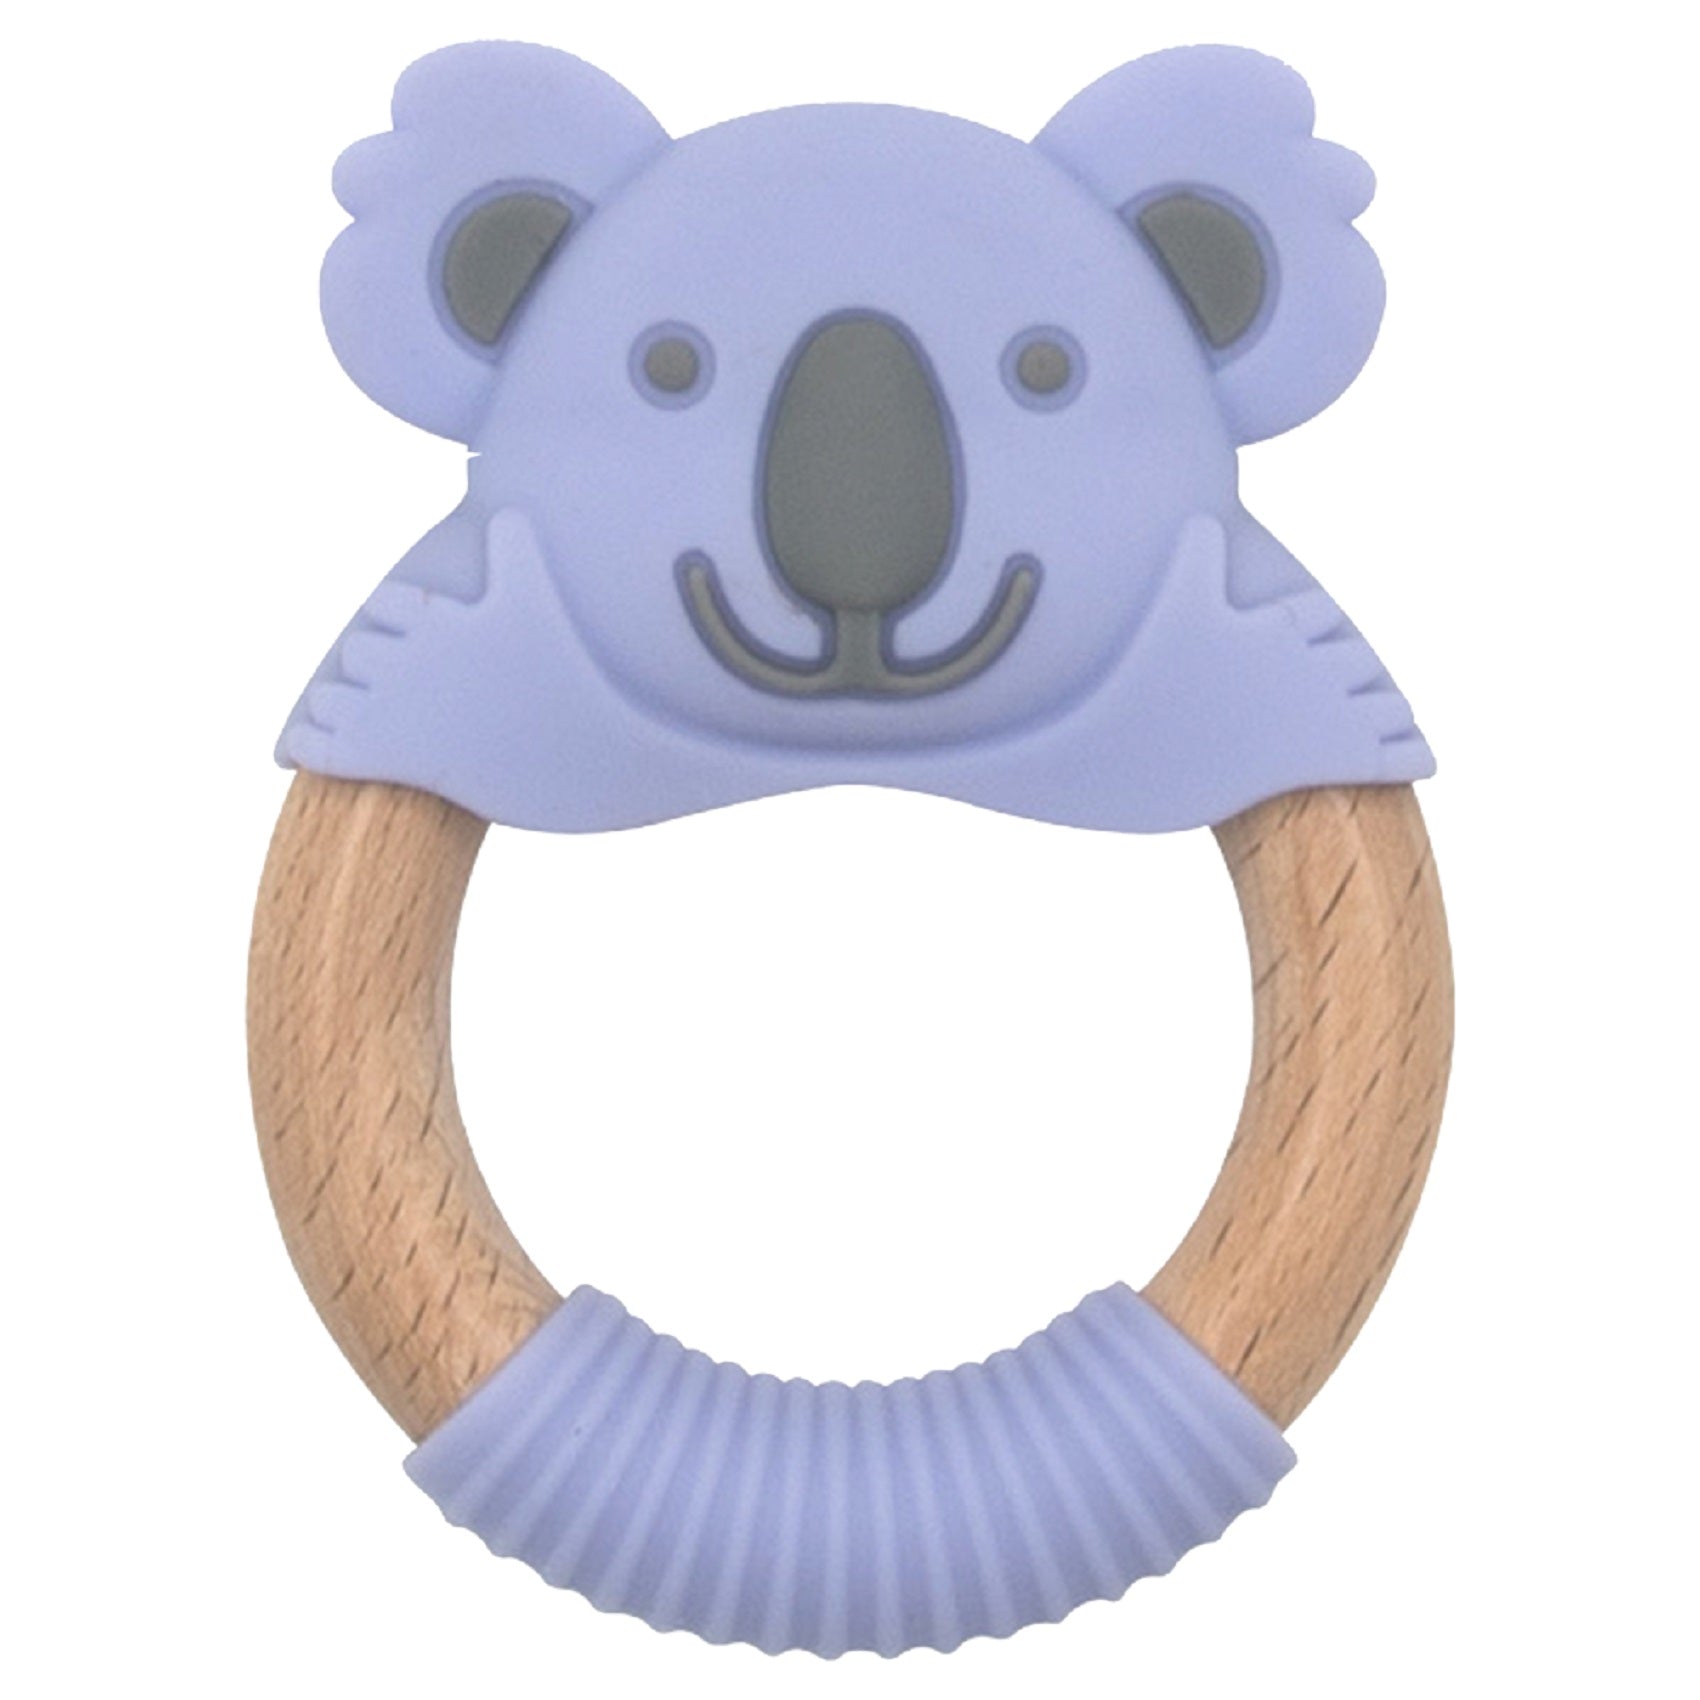 Baby Works - Bibibaby Teething Ring - Kira Koala (Violet/Grey)